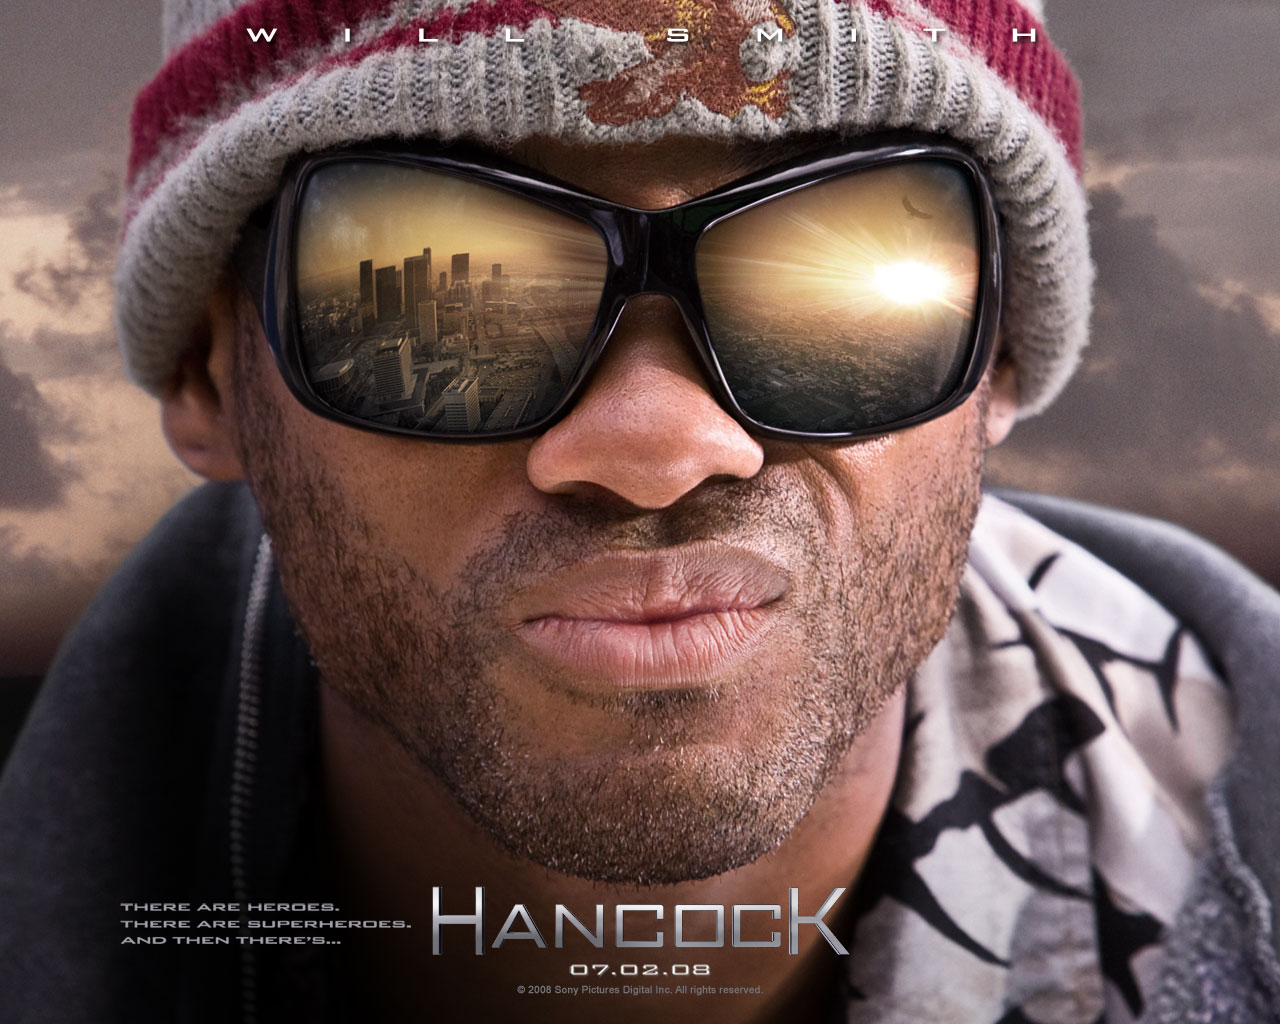 Hancock HD wallpapers, Desktop wallpaper - most viewed